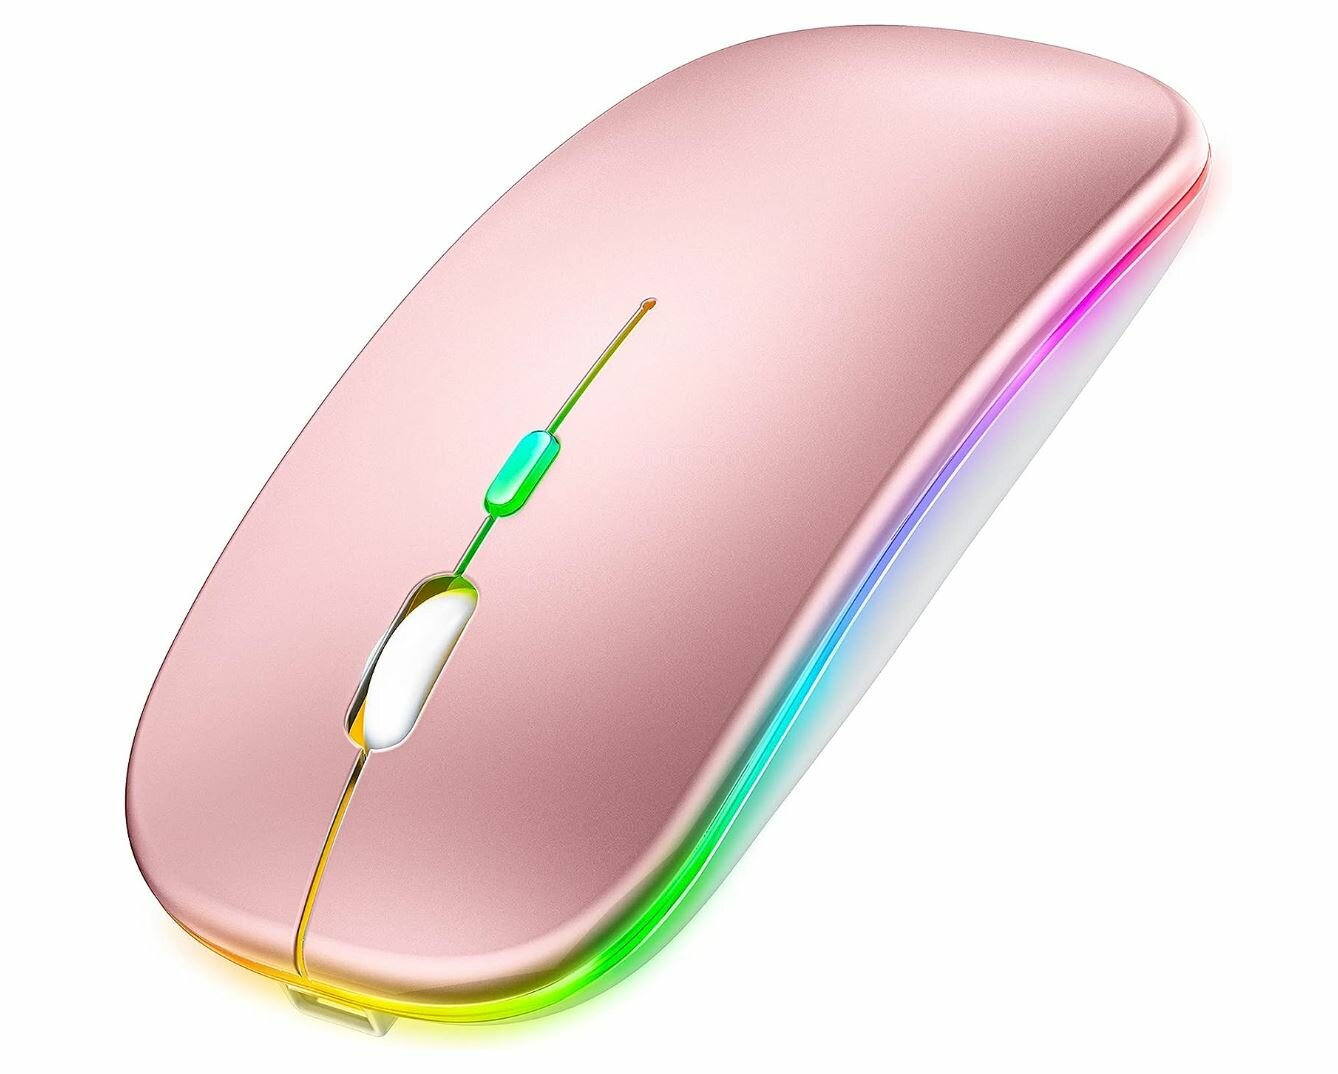 Беспроводная мышь с RGB подсветкой для компьютера, ноутбука, пк, макбука / Ультратонкая бесшумная мышка / Bluetooth - Wireless 2.4 G / Rose